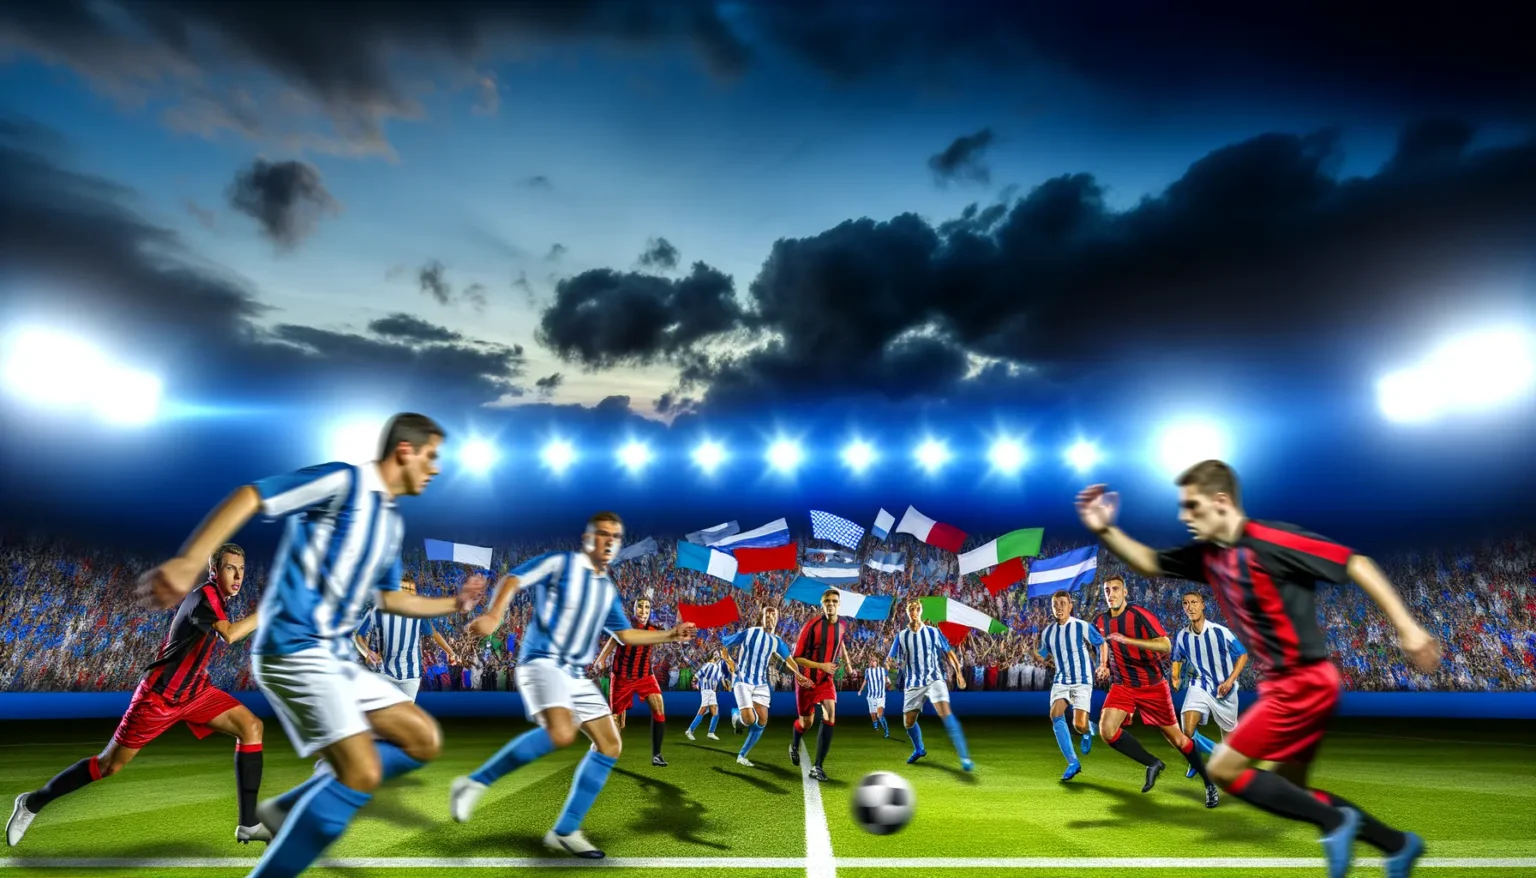 Eine lebendige Szene eines Fußballspiels bei Nacht mit Spielern in blau-weißen und rot-schwarzen Trikots, die intensiv um den Ball kämpfen. Im Hintergrund erheben sich gut beleuchtete Tribünen, gefüllt mit begeisterten Fans, die verschiedenfarbige Flaggen schwenken, unter einem dramatischen dunkelblauen Himmel mit aufziehenden Wolken und Flutlichtern, die das Feld beleuchten.